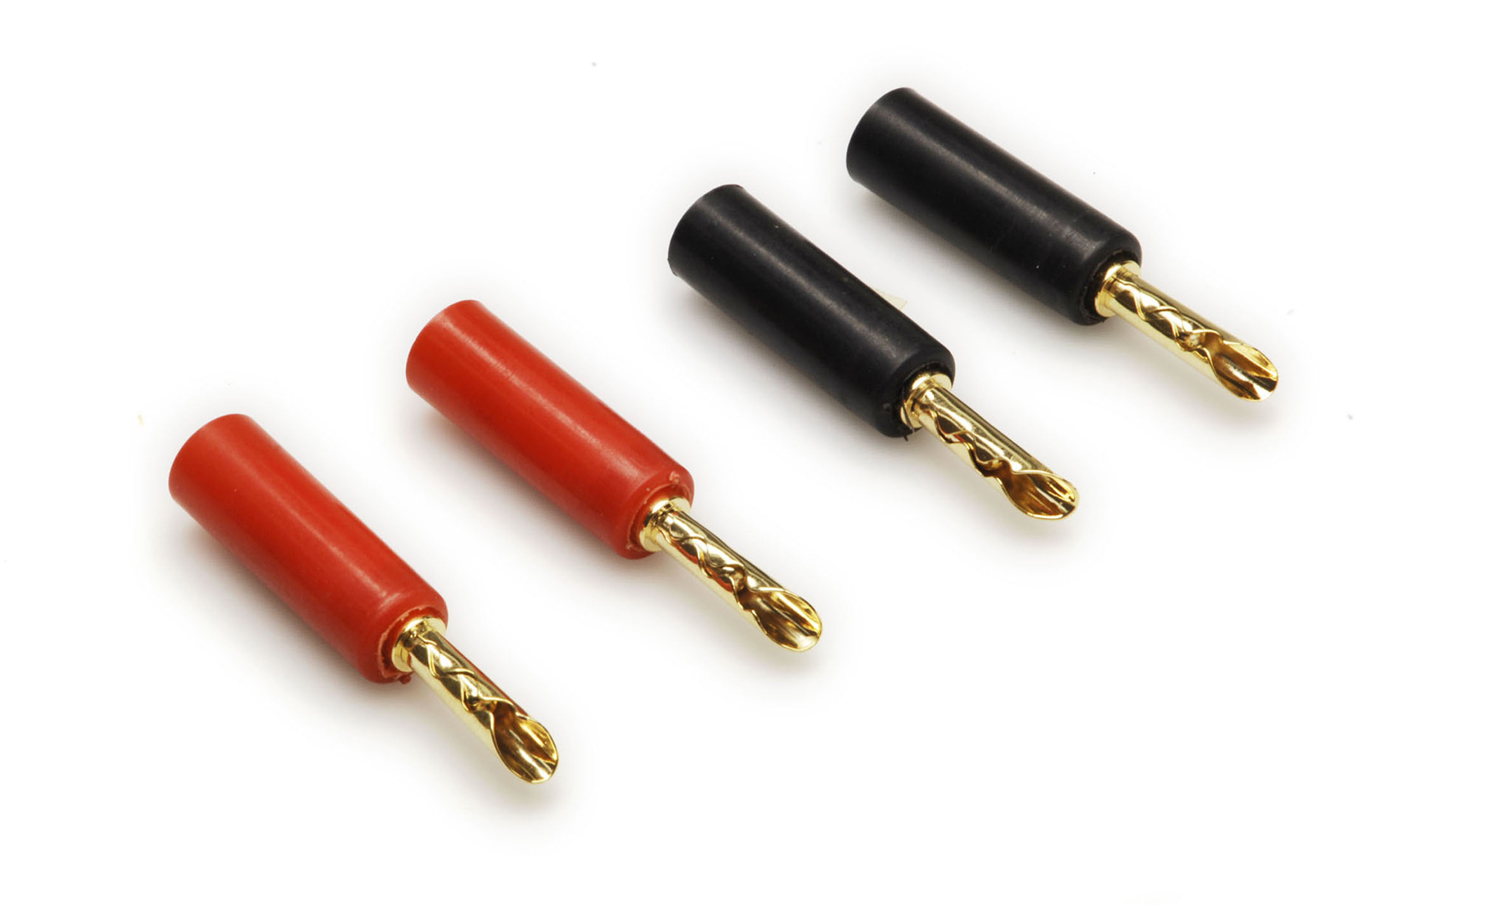 6111- 4 x Banana plugs BFA type black/red